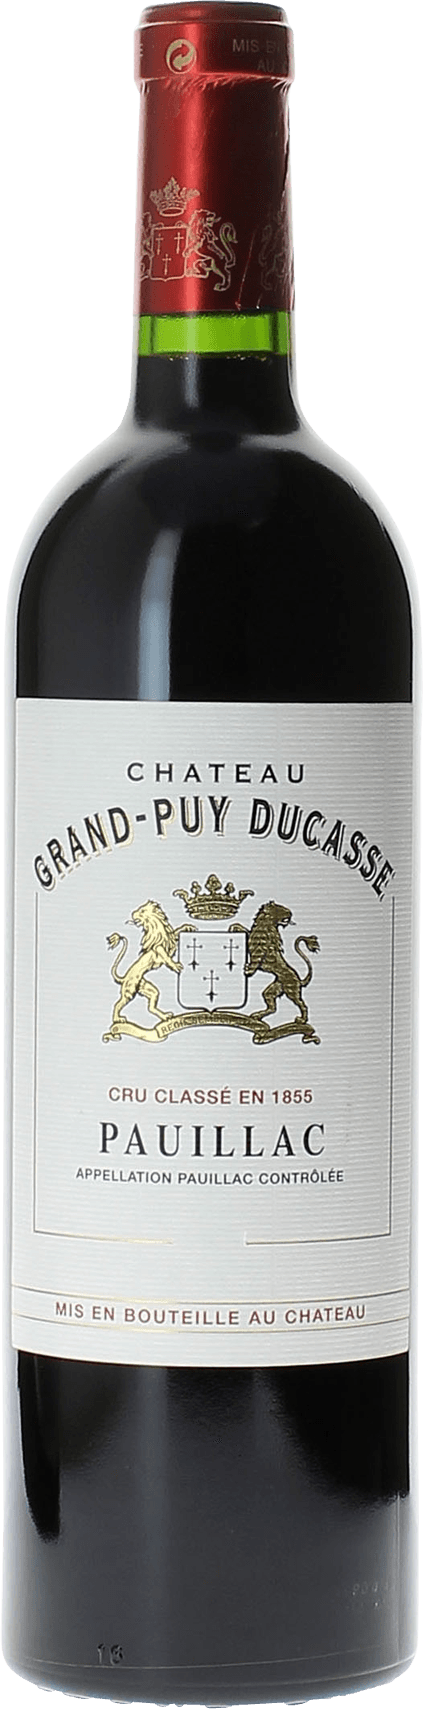 Grand puy ducasse 1985 5 me Grand cru class Pauillac, Bordeaux rouge